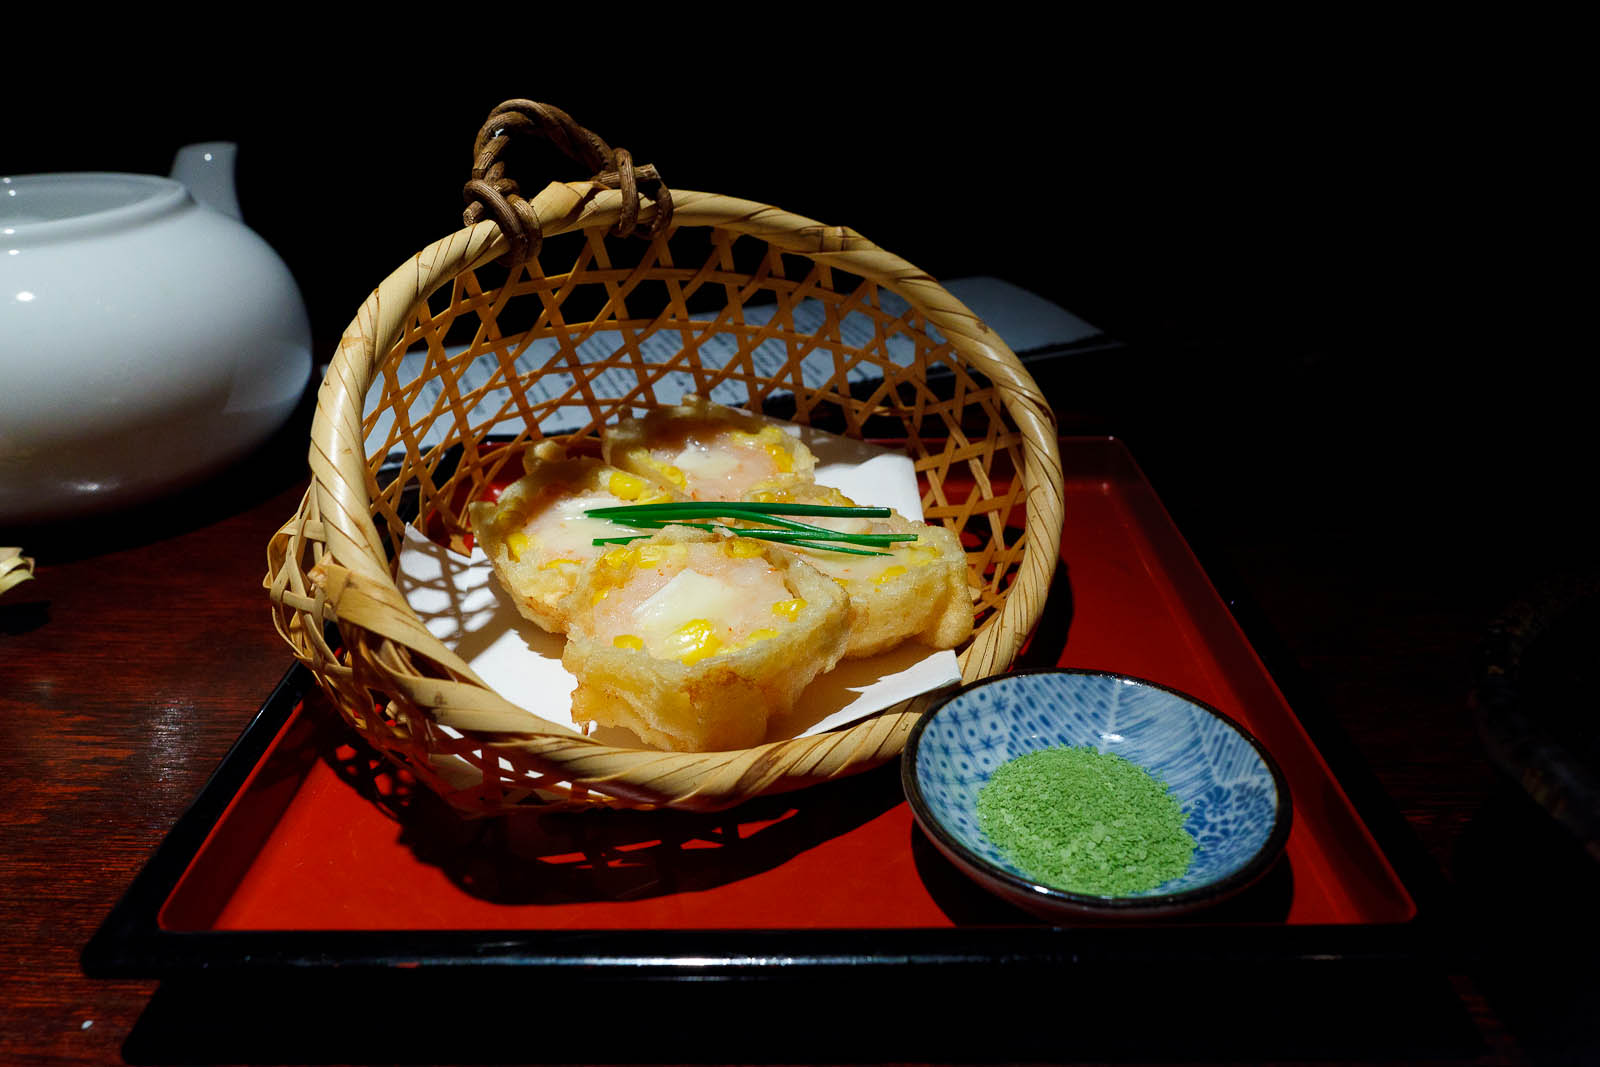 Camembert & shrimp corn tempura ($8.95)